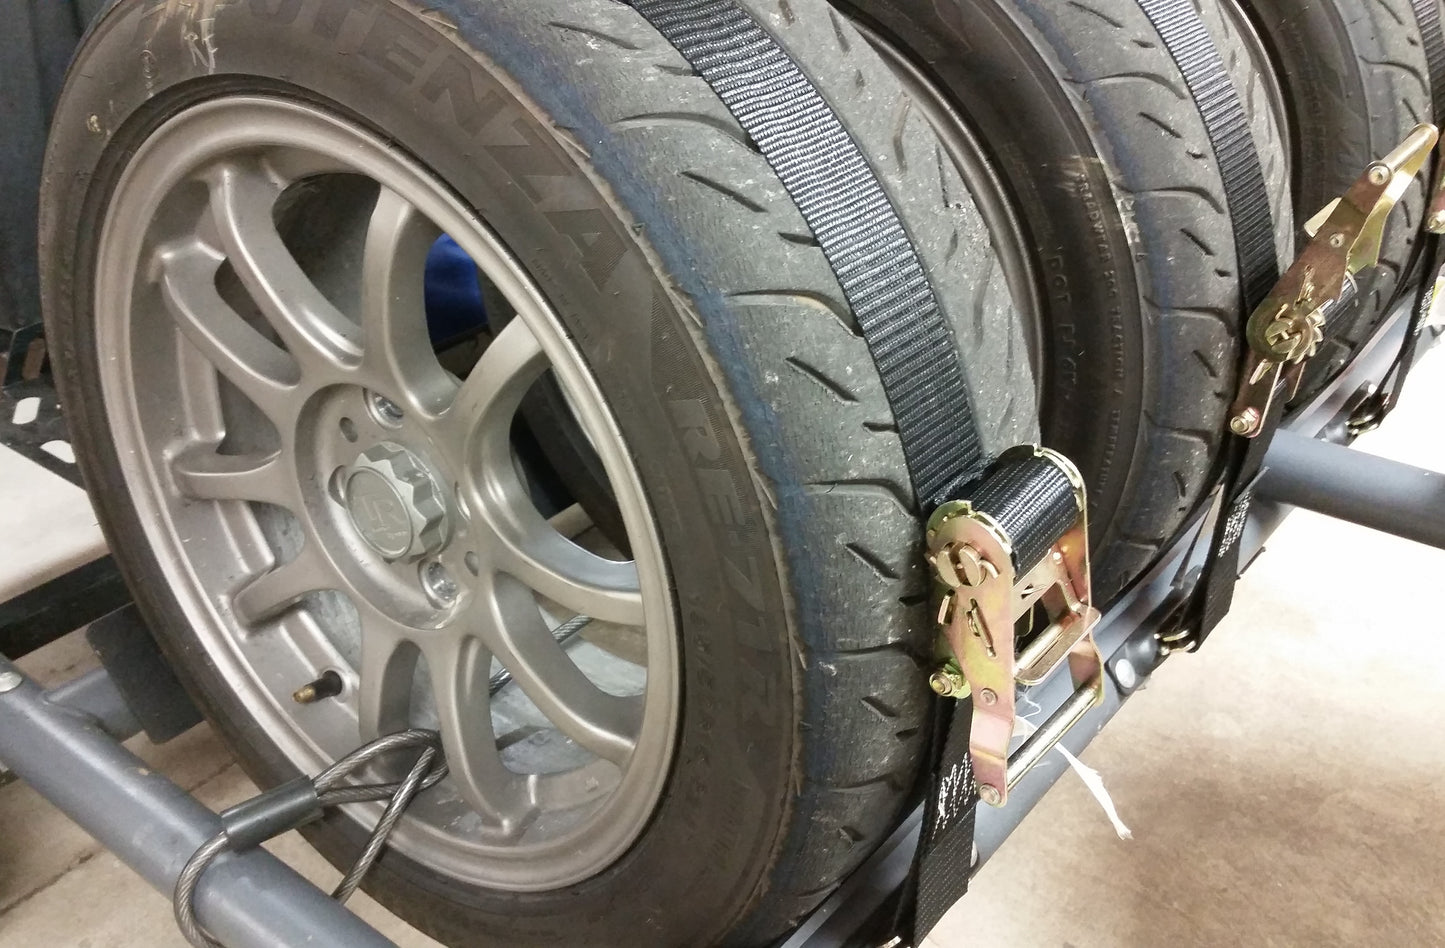 7ft Ratchet Tire Strap, 2" wide black webbing